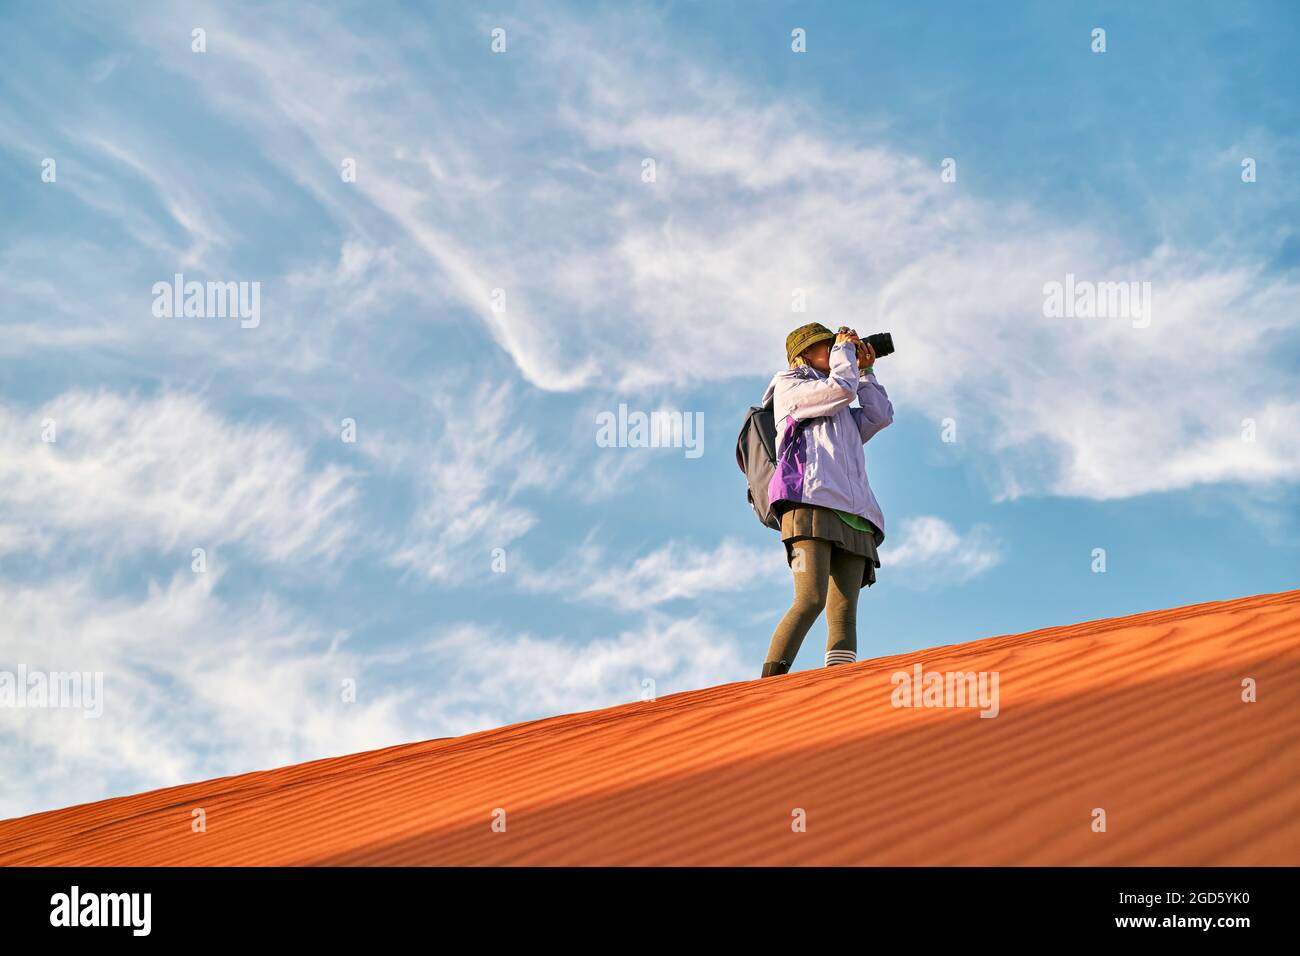 asiatische Fotografin, die auf einer Sanddüne steht und ein Bild fotografiert Stockfoto